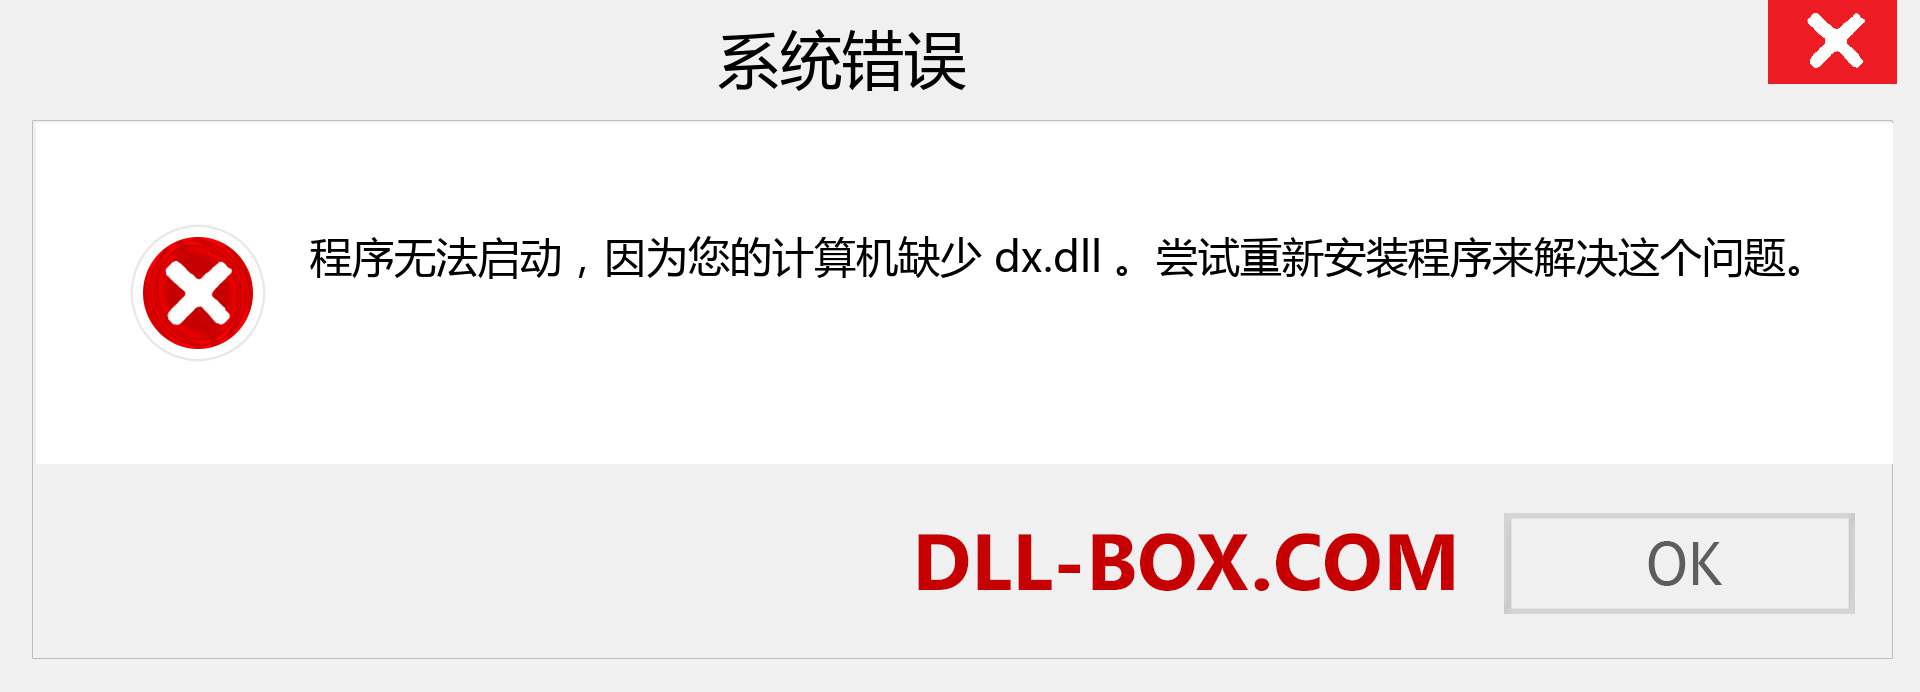 dx.dll 文件丢失？。 适用于 Windows 7、8、10 的下载 - 修复 Windows、照片、图像上的 dx dll 丢失错误